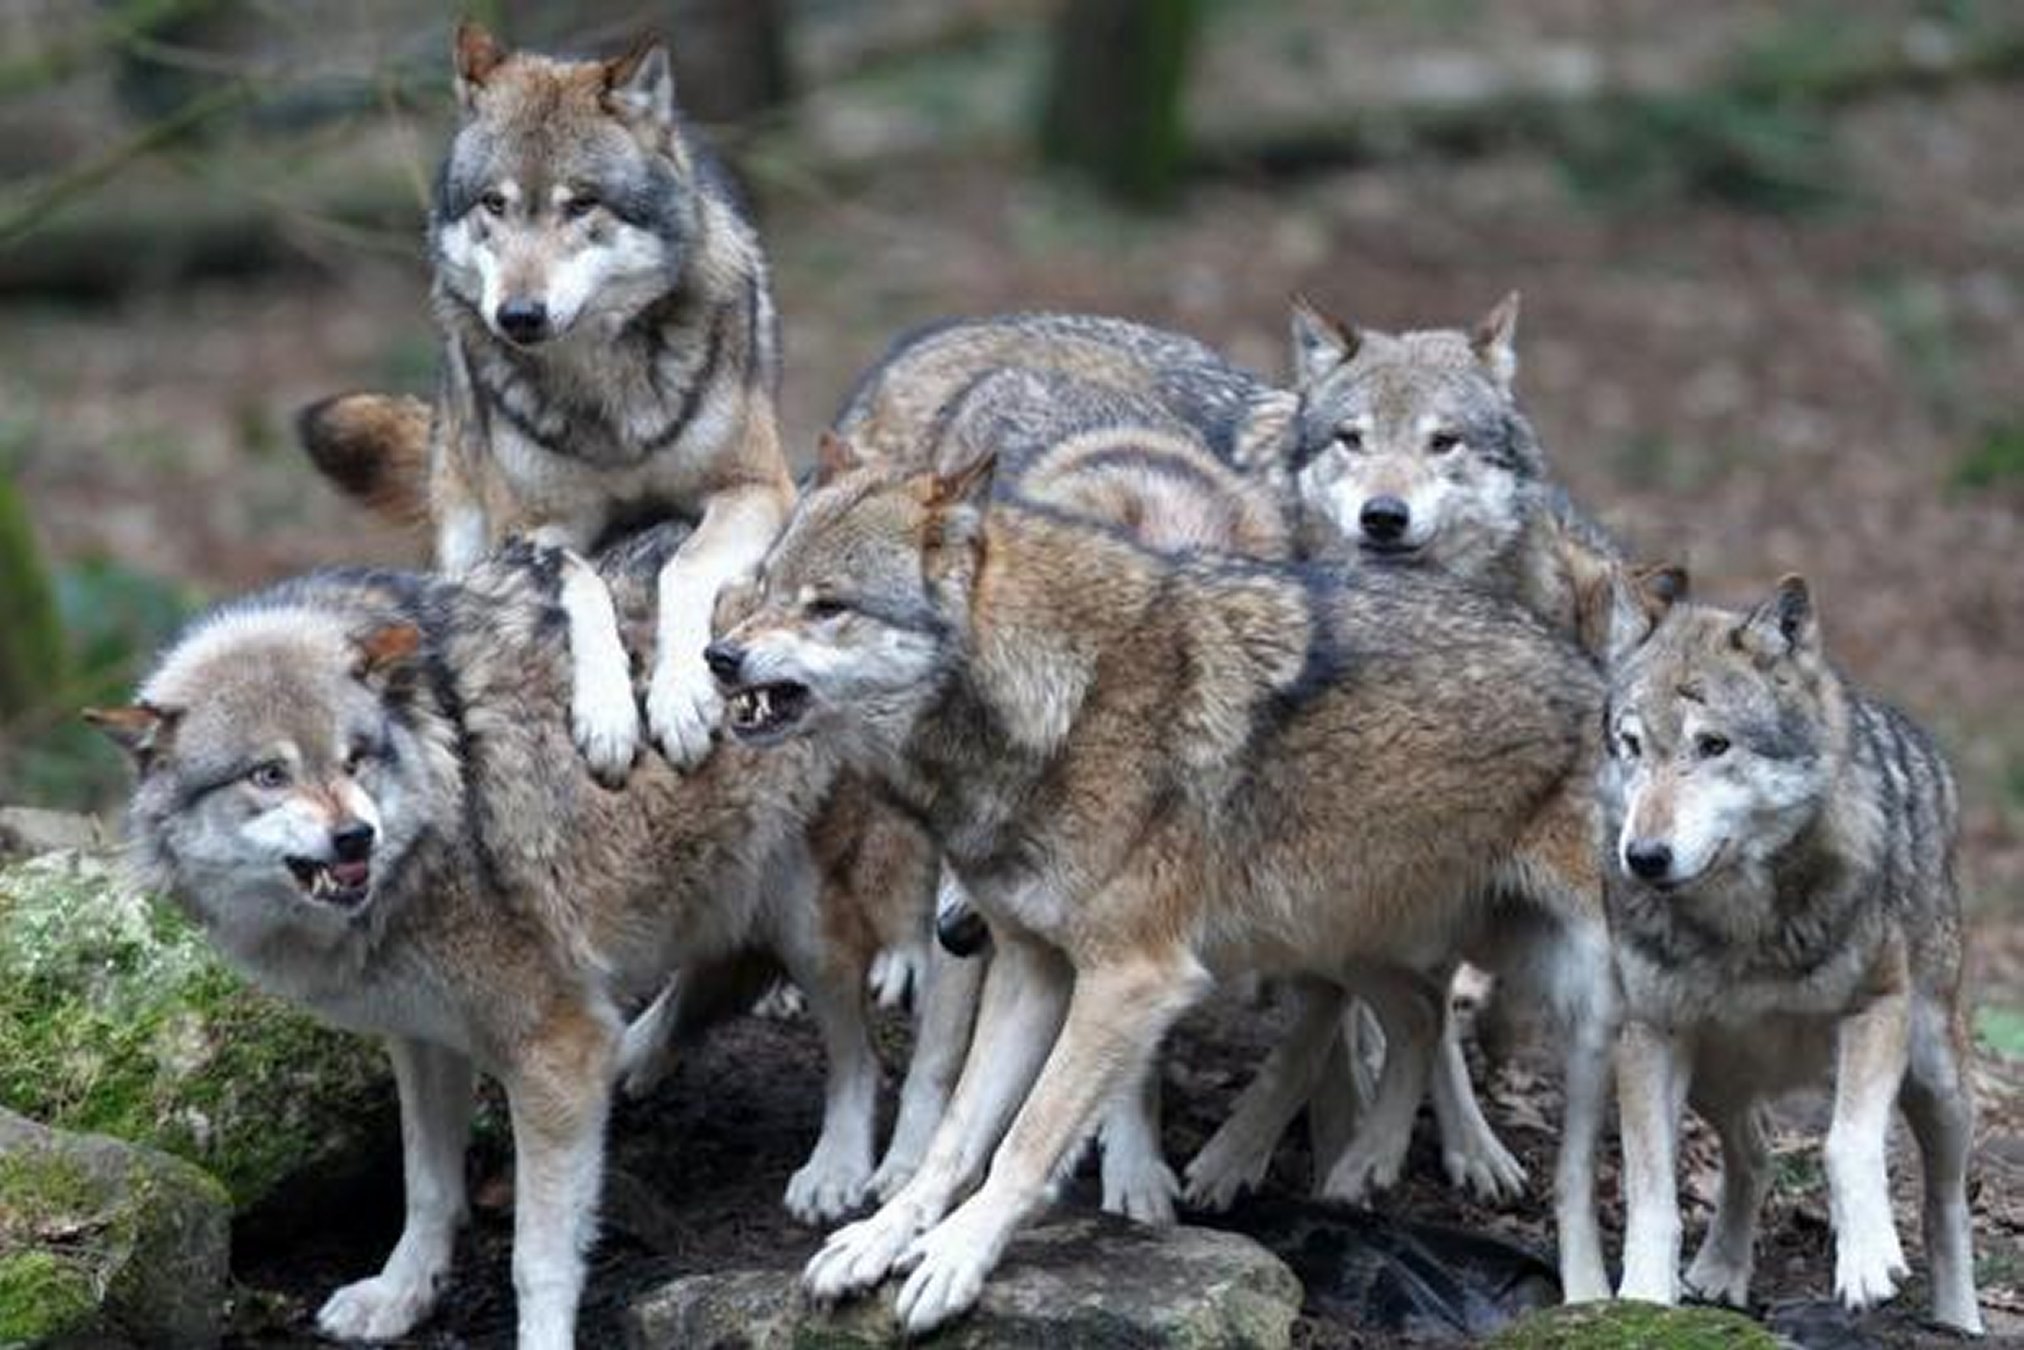 CRONACA – Ceresole Reale, paura dei lupi: uccise 15 pecore e 3 capre -  CentoTorri